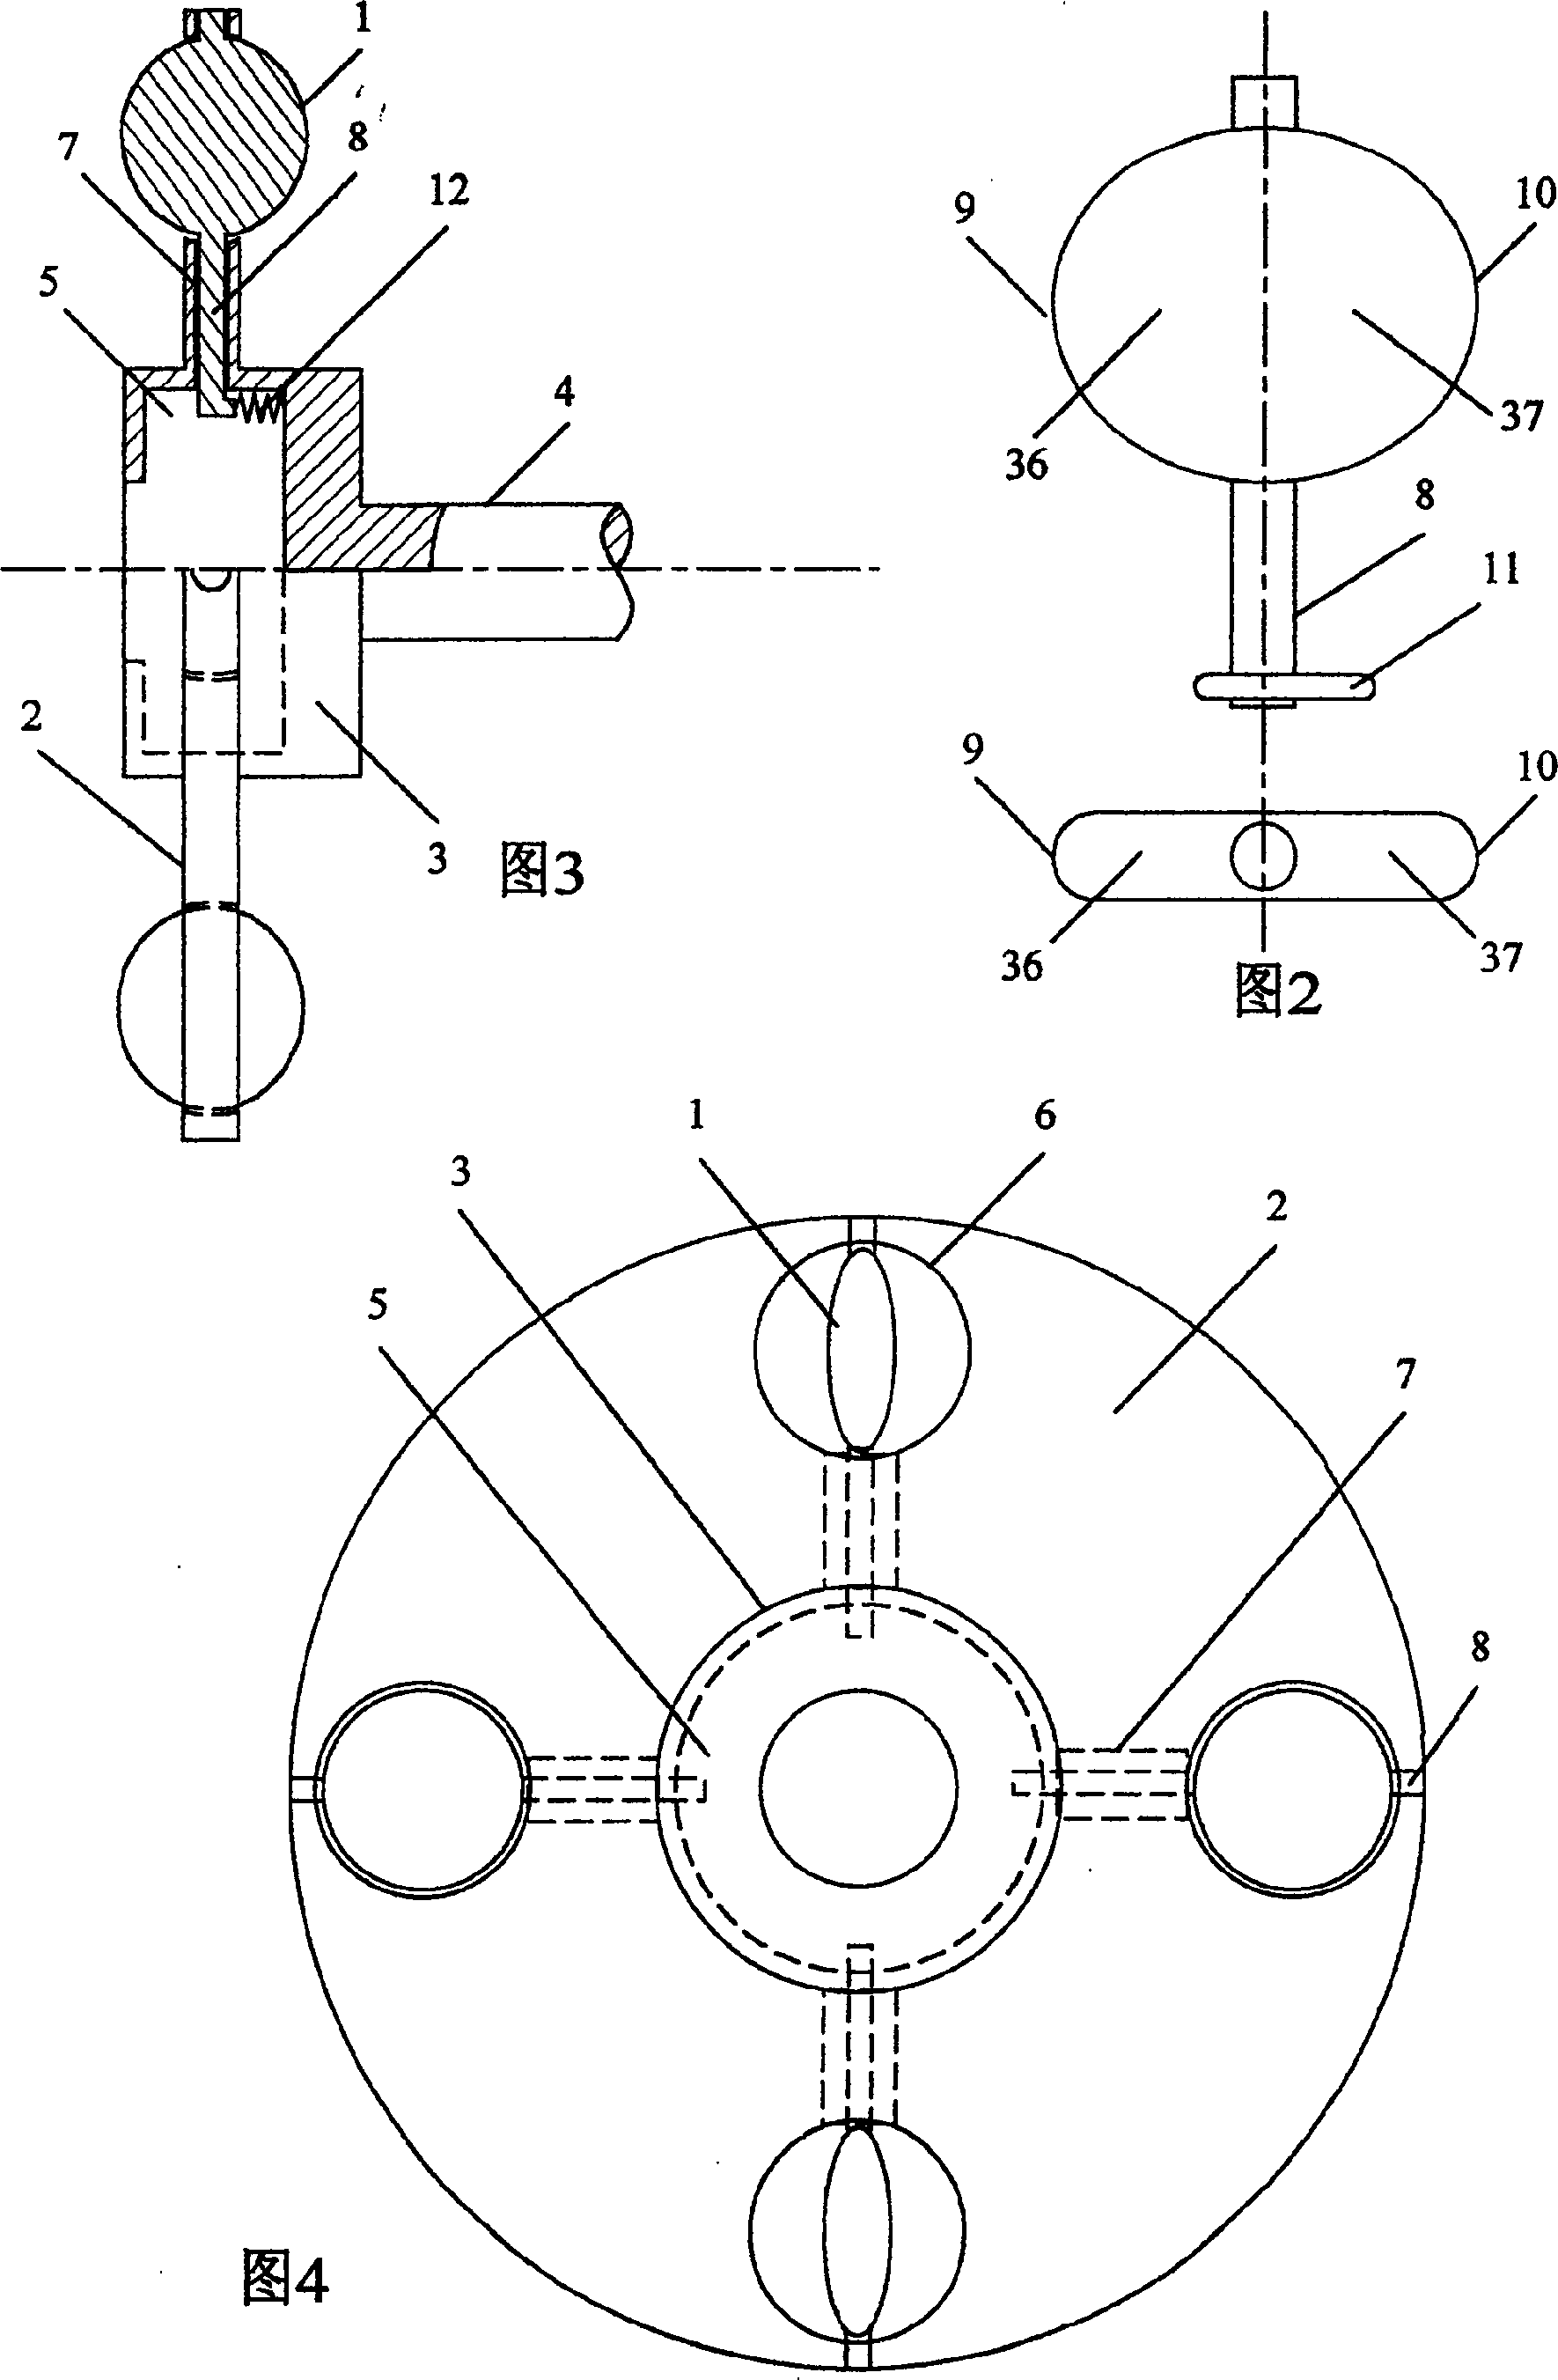 Rotary piston machine